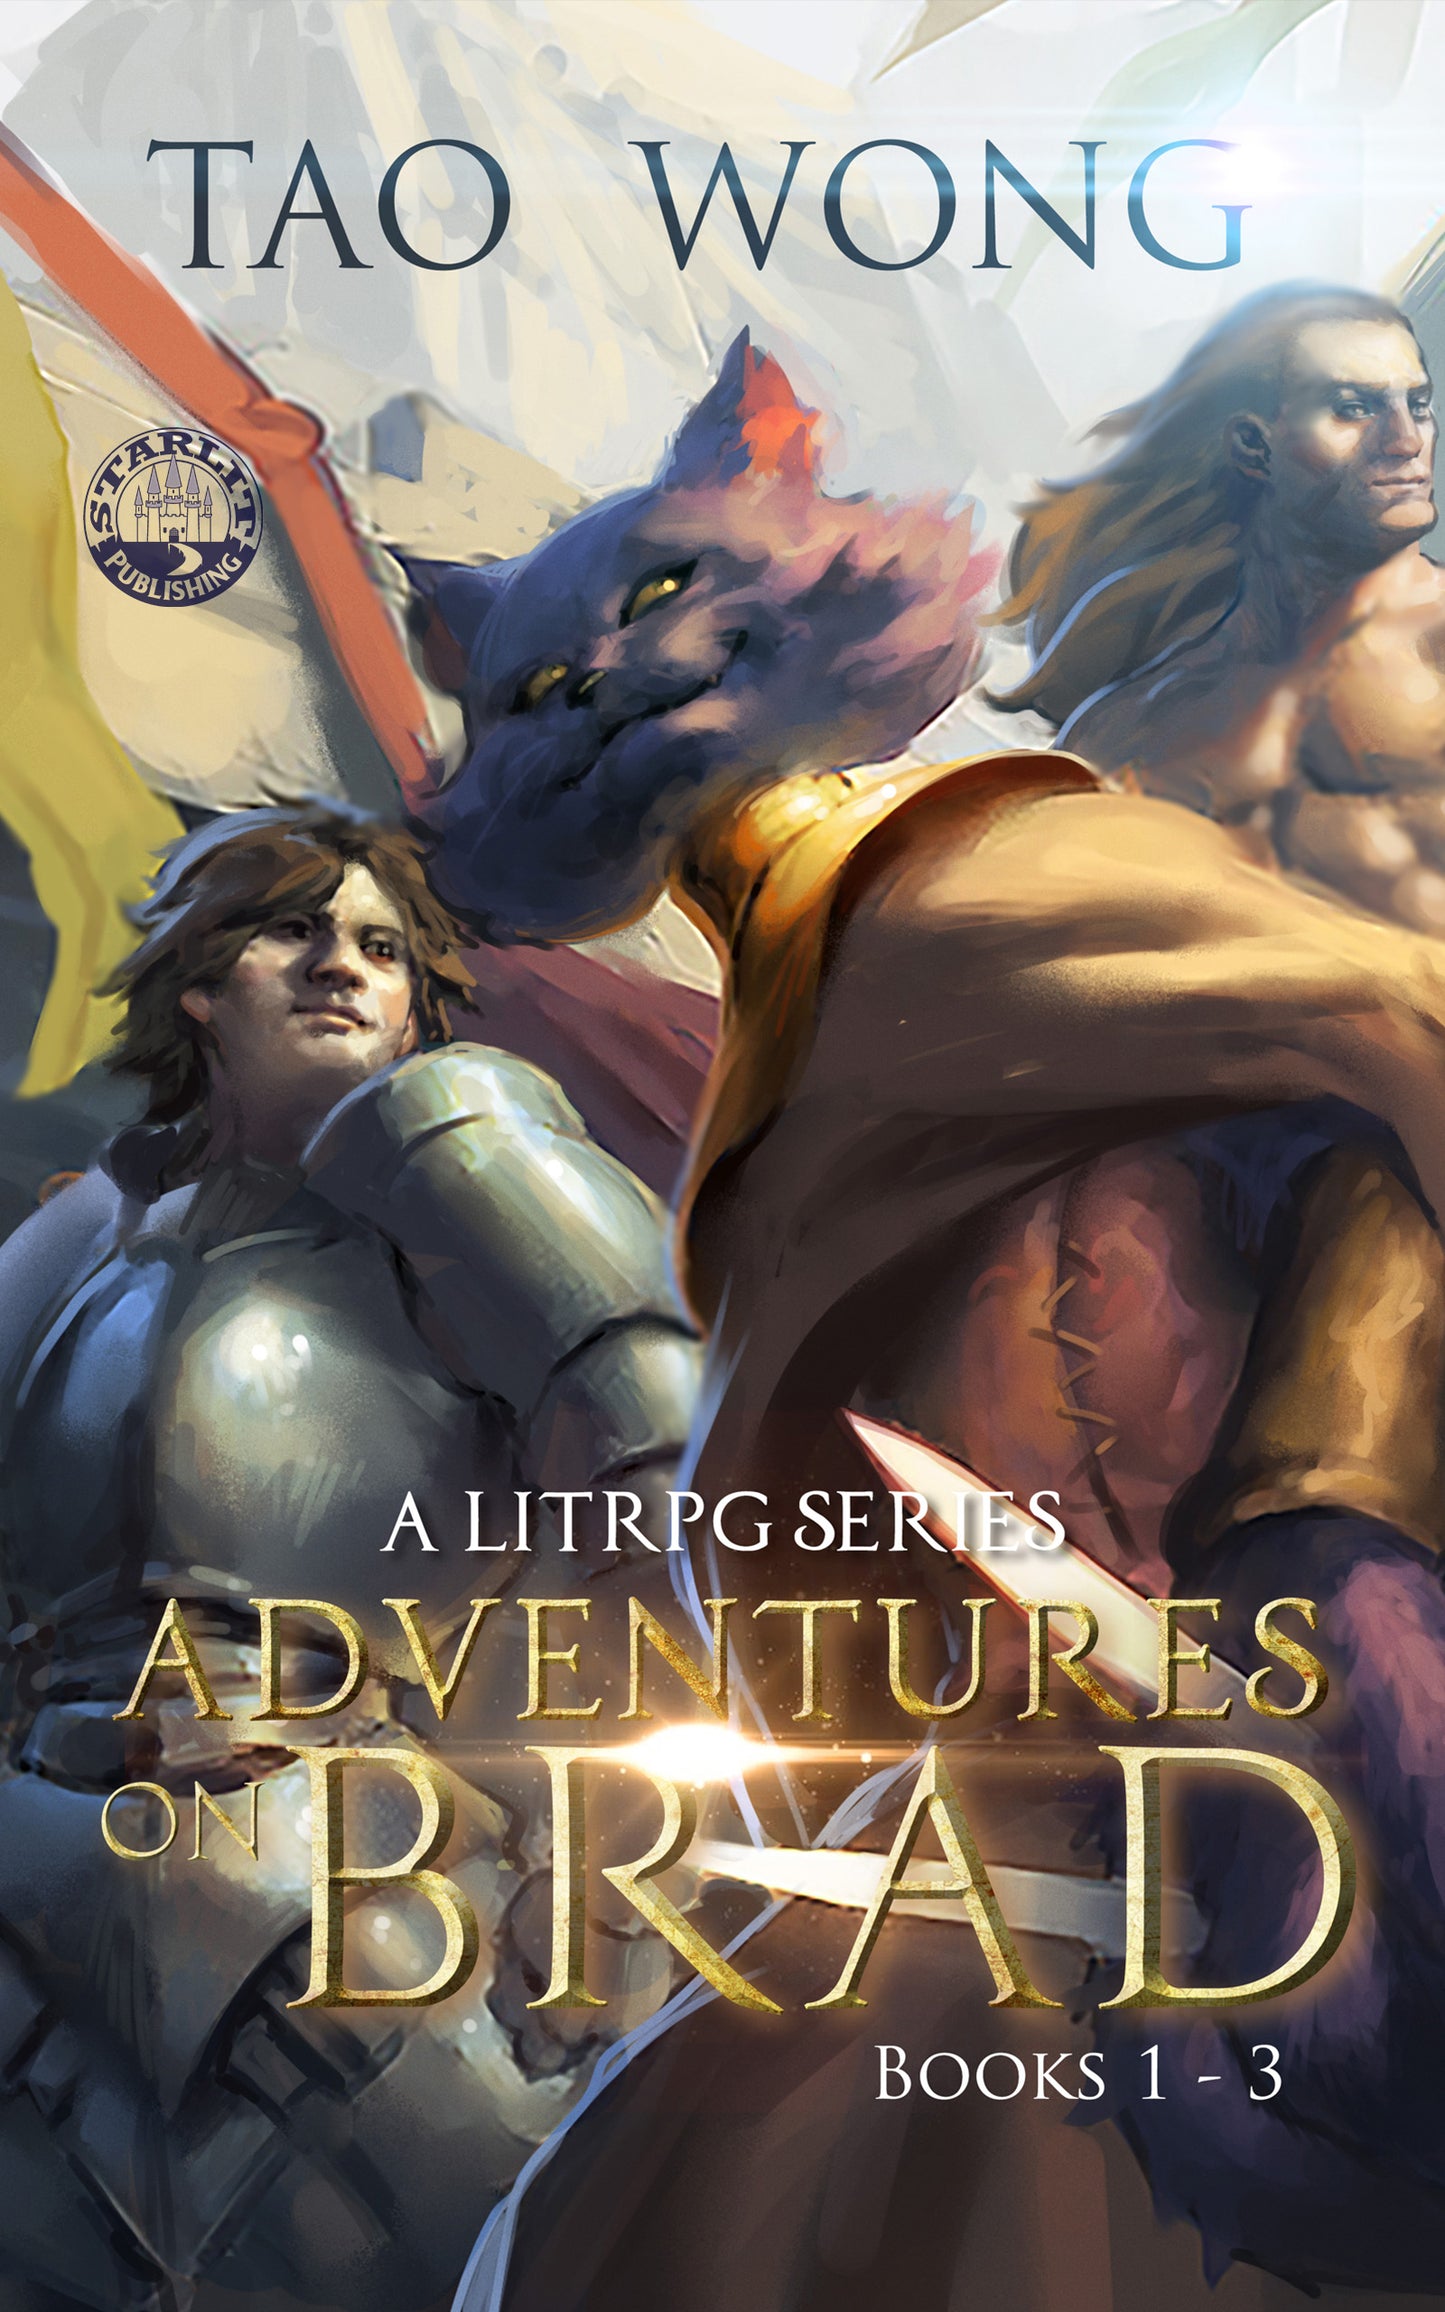 Adventures on Brad: Books 1-3